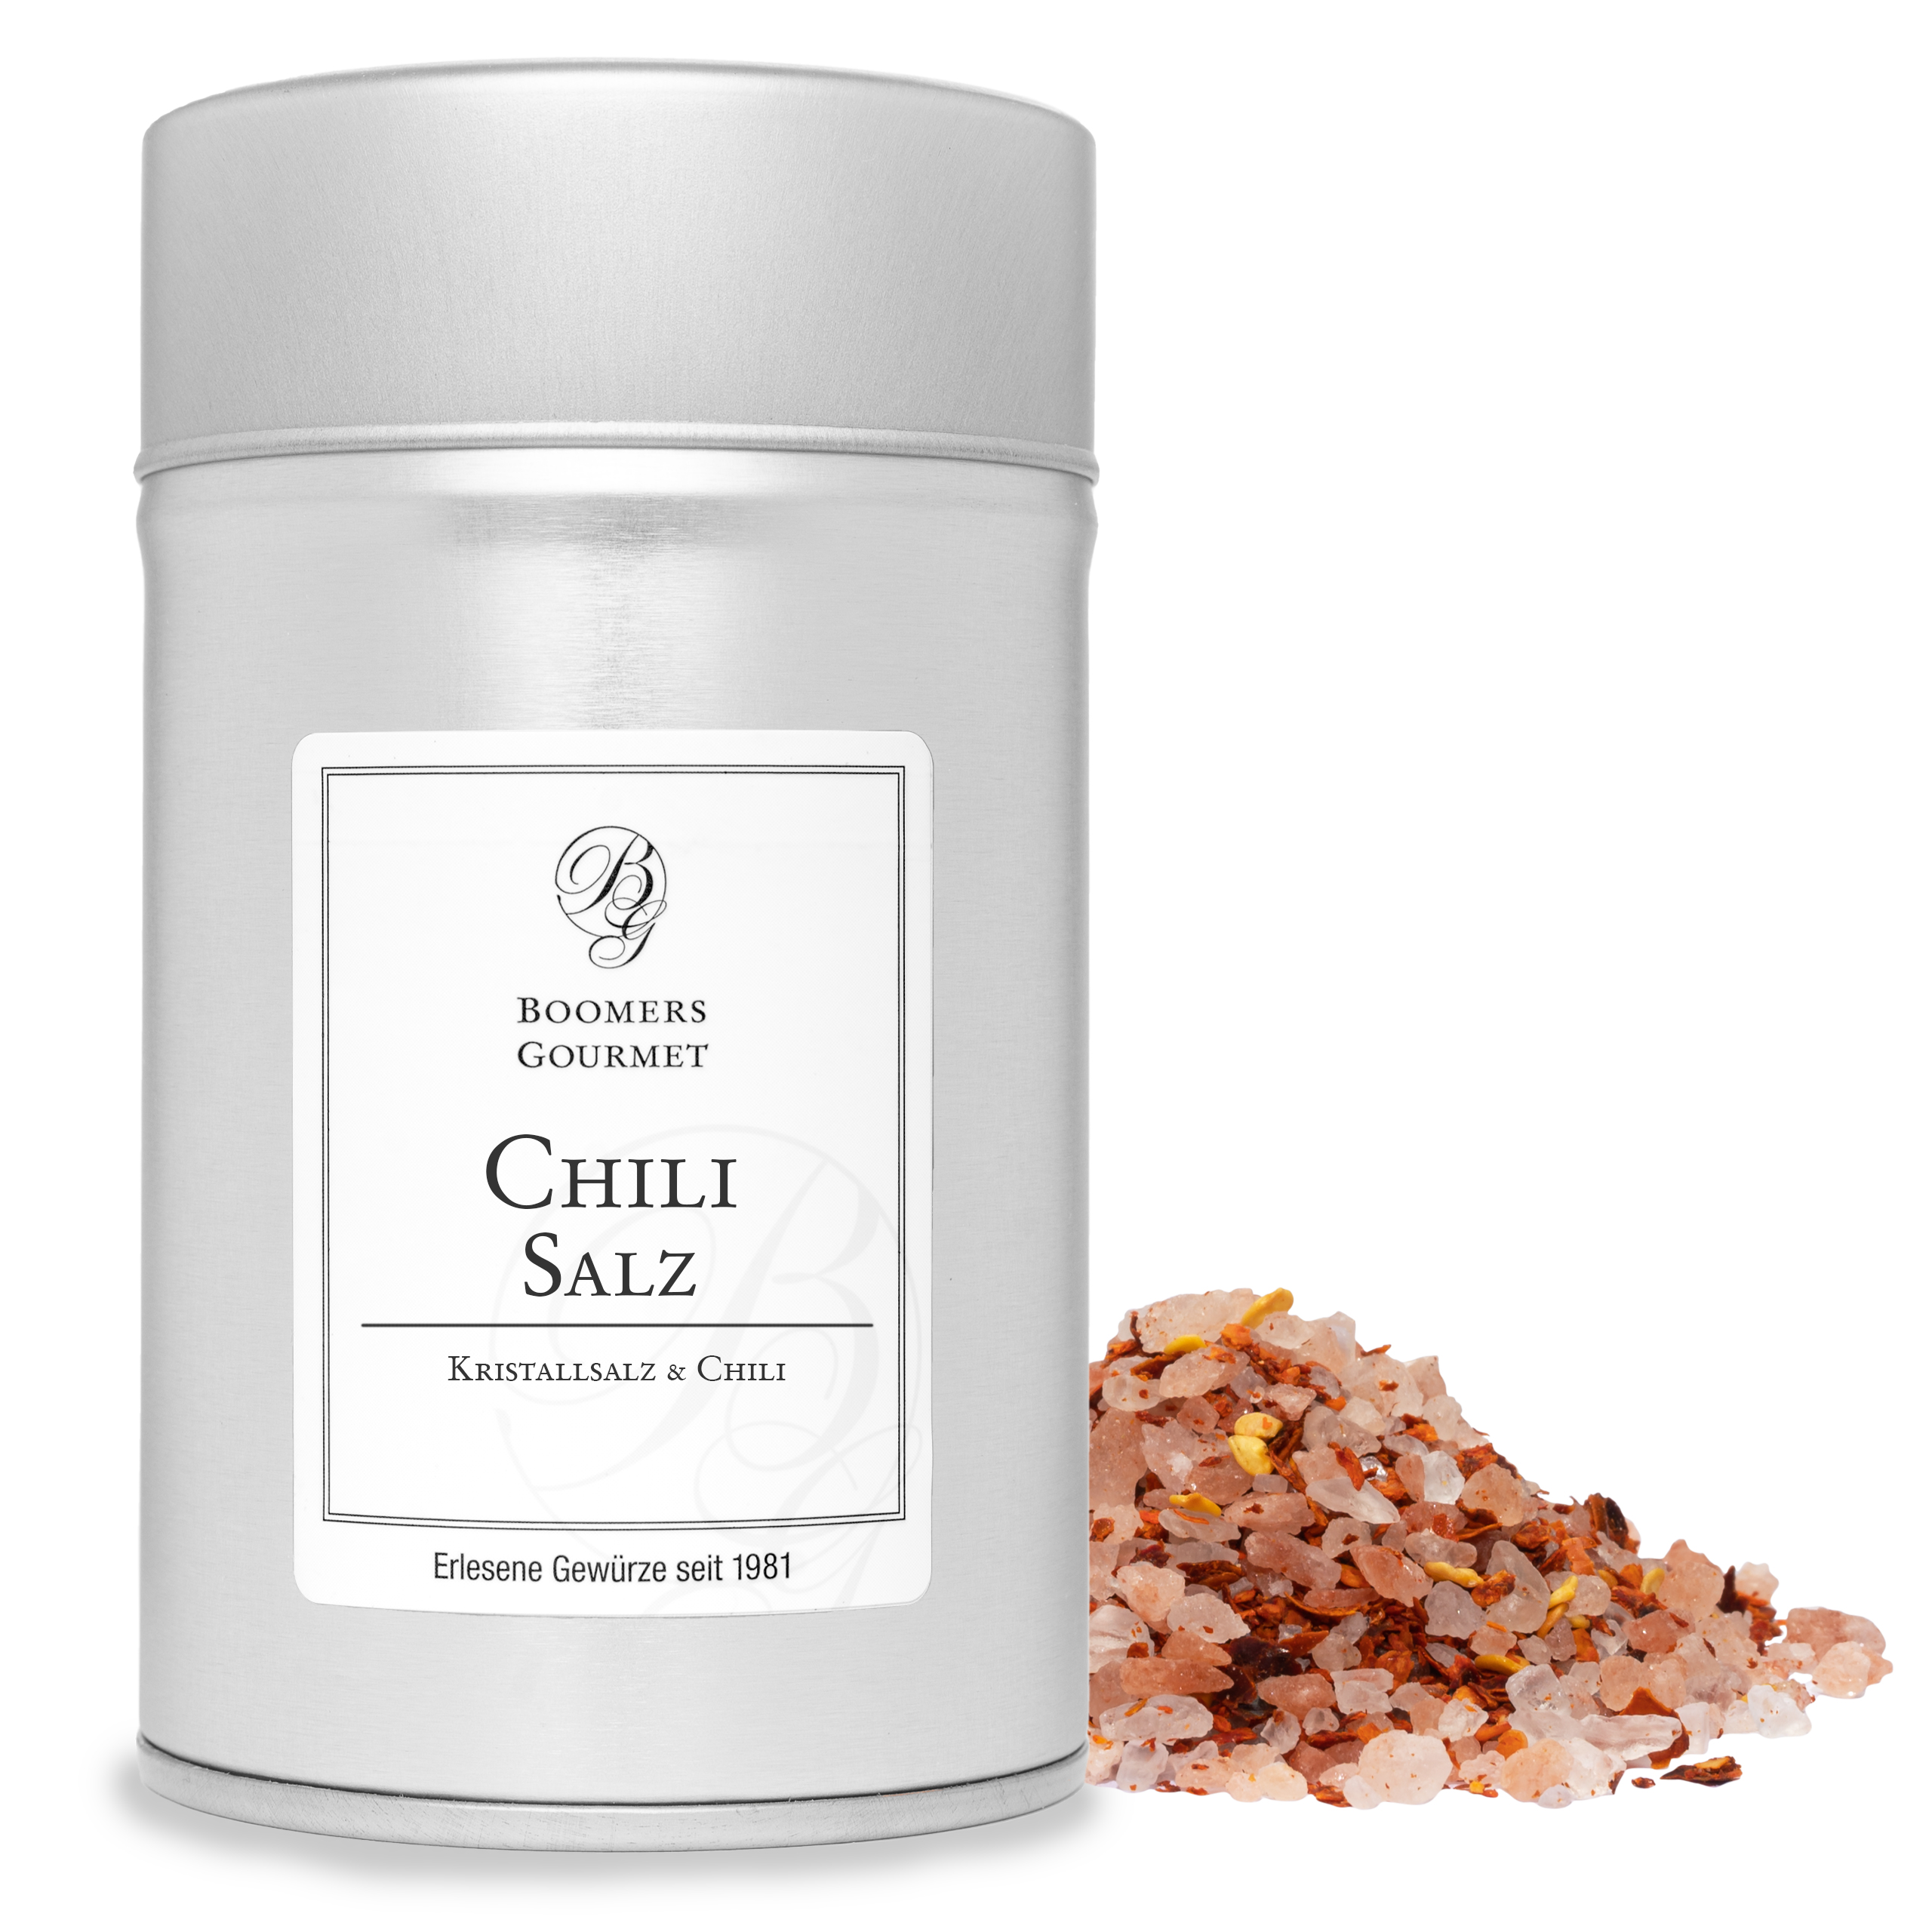 Chili Salz, Kristallsalz & Chili